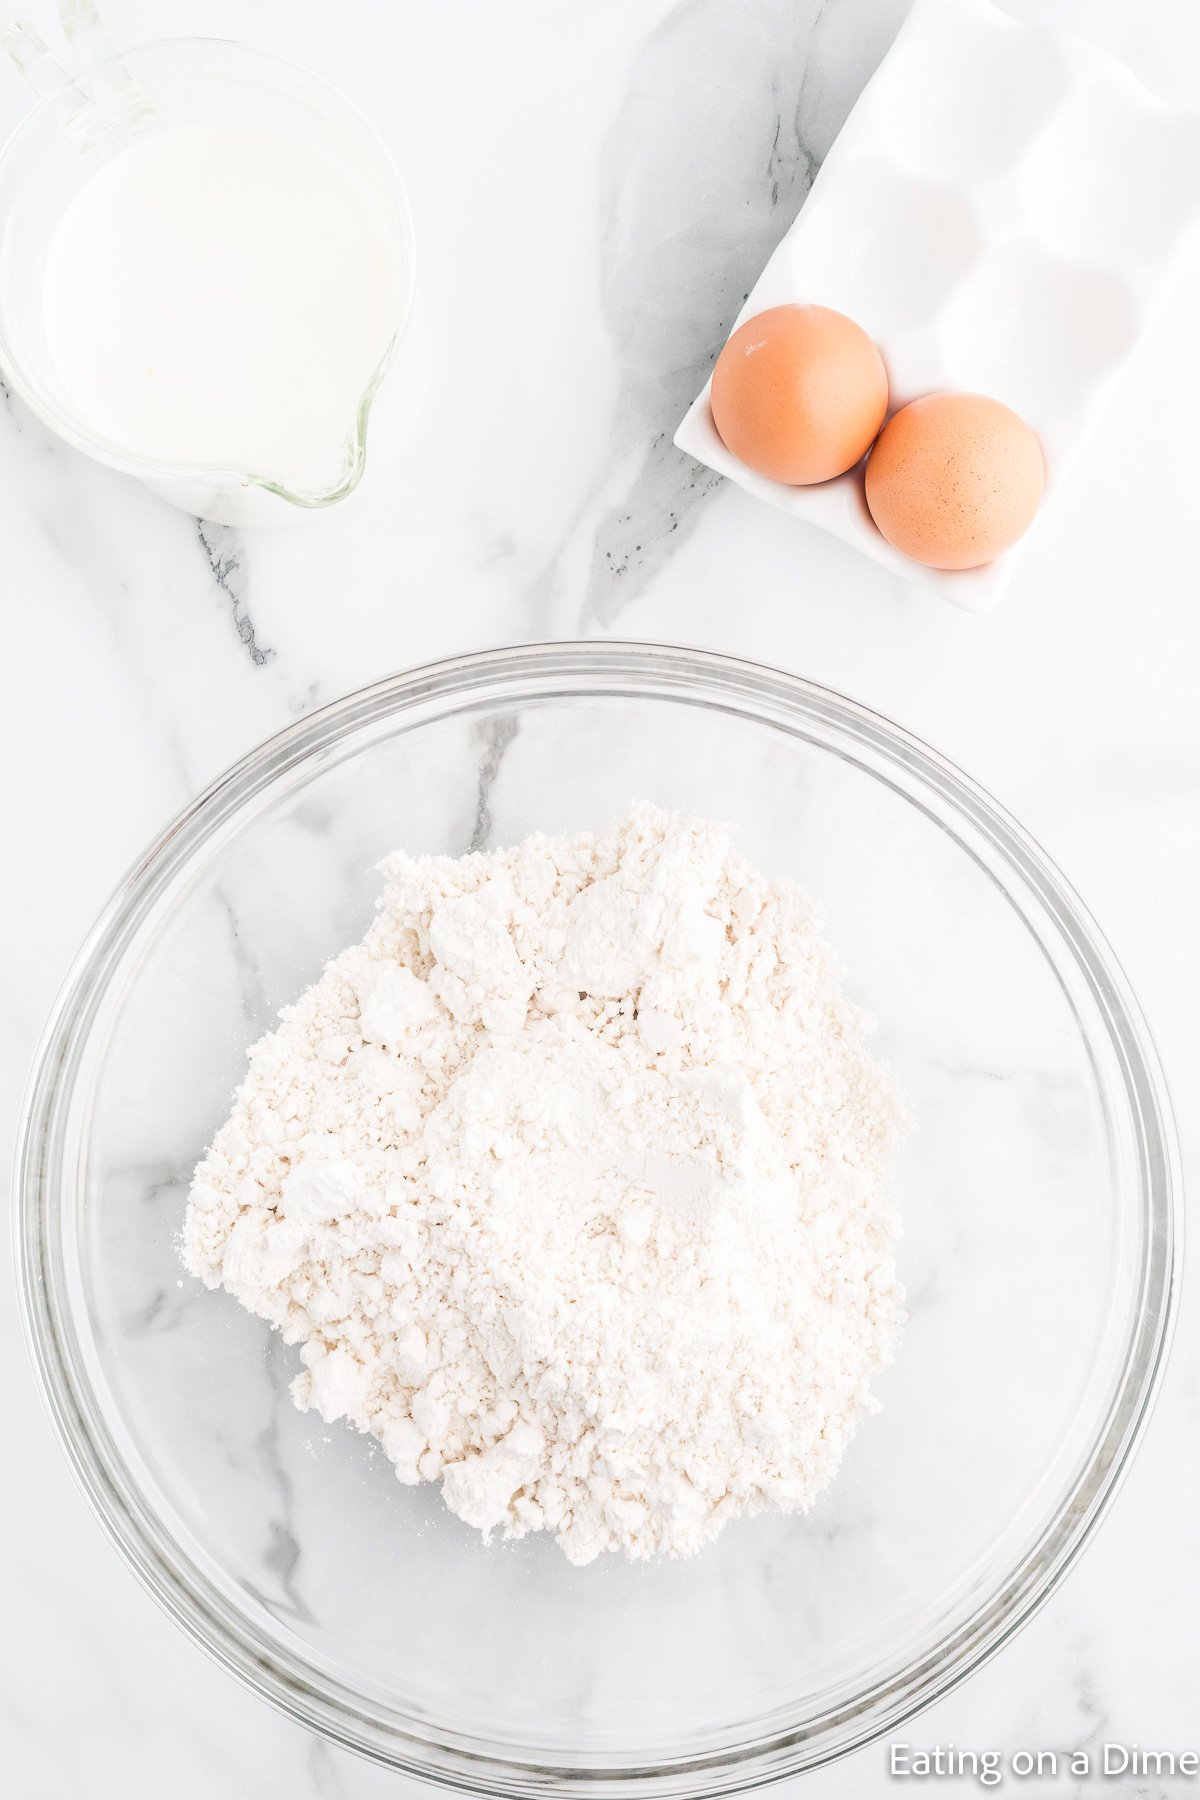 Bisquick Ingredients - flour, baking powder, salt, butter